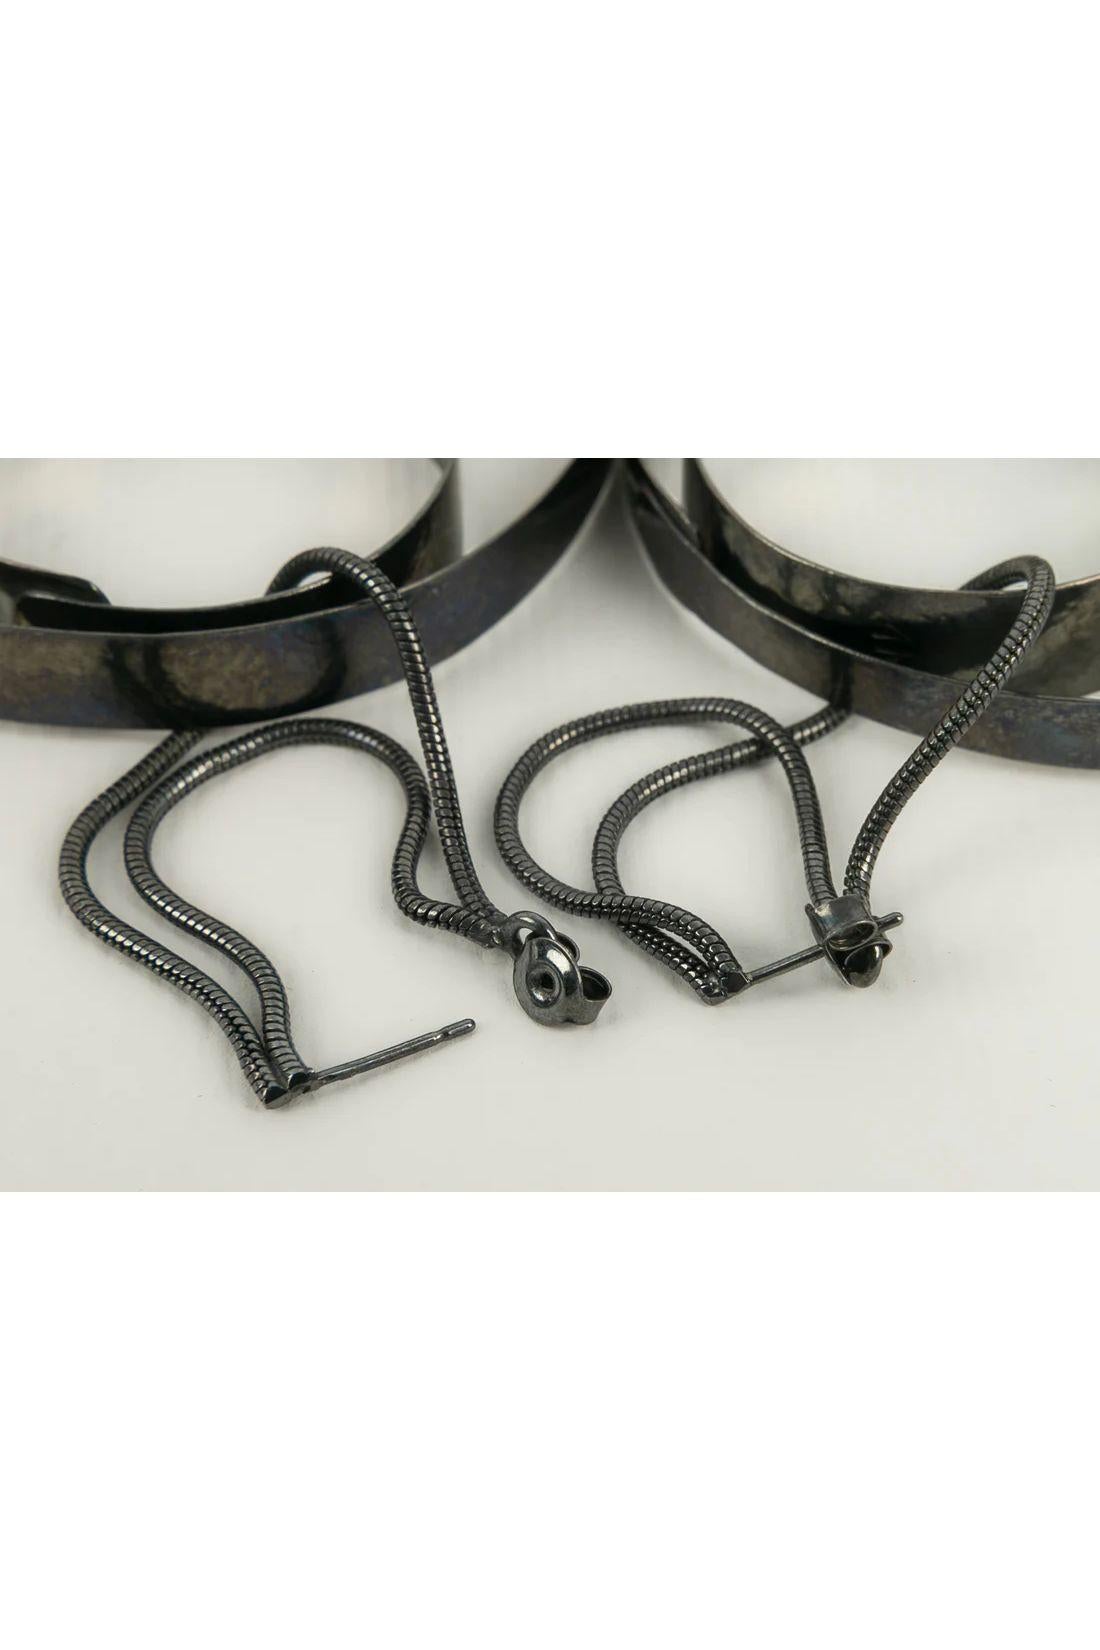 Van der Straeten Dark Silver metal Earrings Made of Two Snake Links For Sale 1